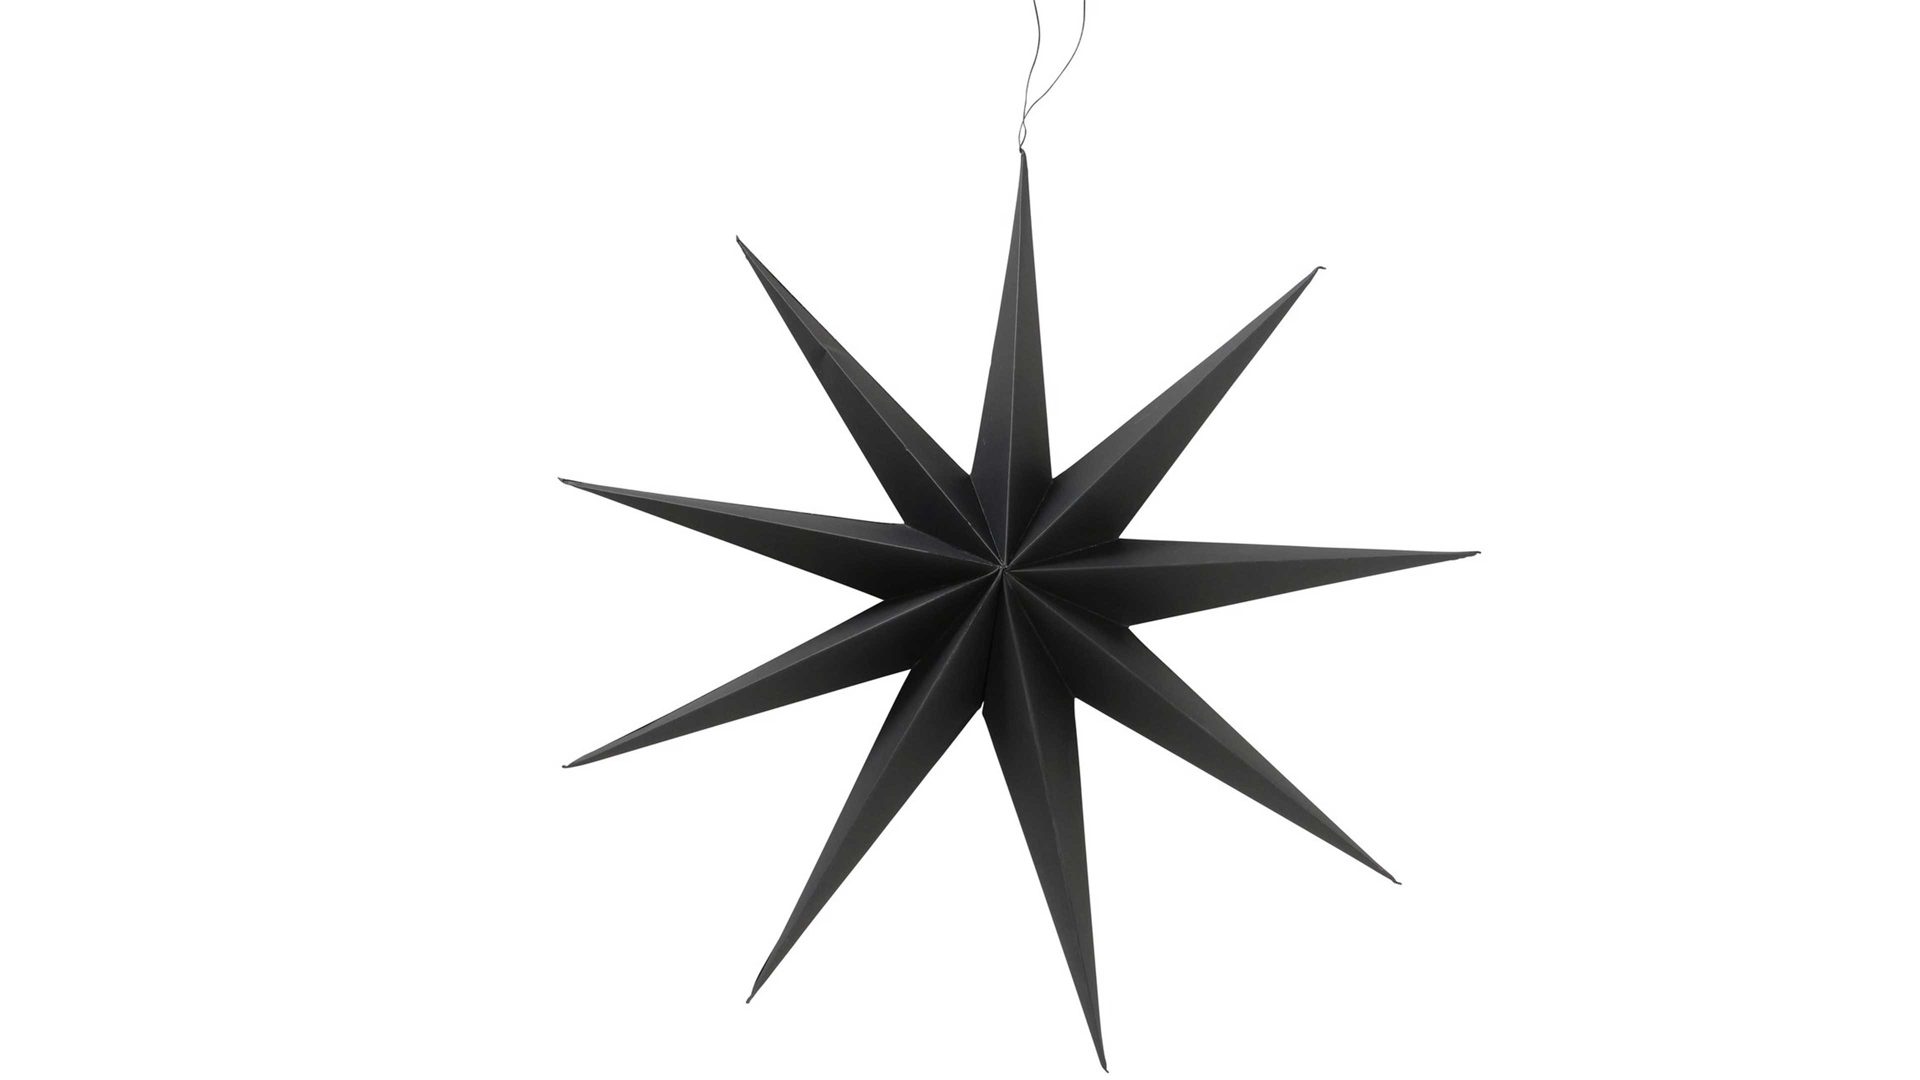 Weihnachtsdekoration Boltze aus Karton / Papier / Pappe in Schwarz Stern-Dekoanhänger Kalena schwarzes Papier - Durchmesser ca. 60 cm